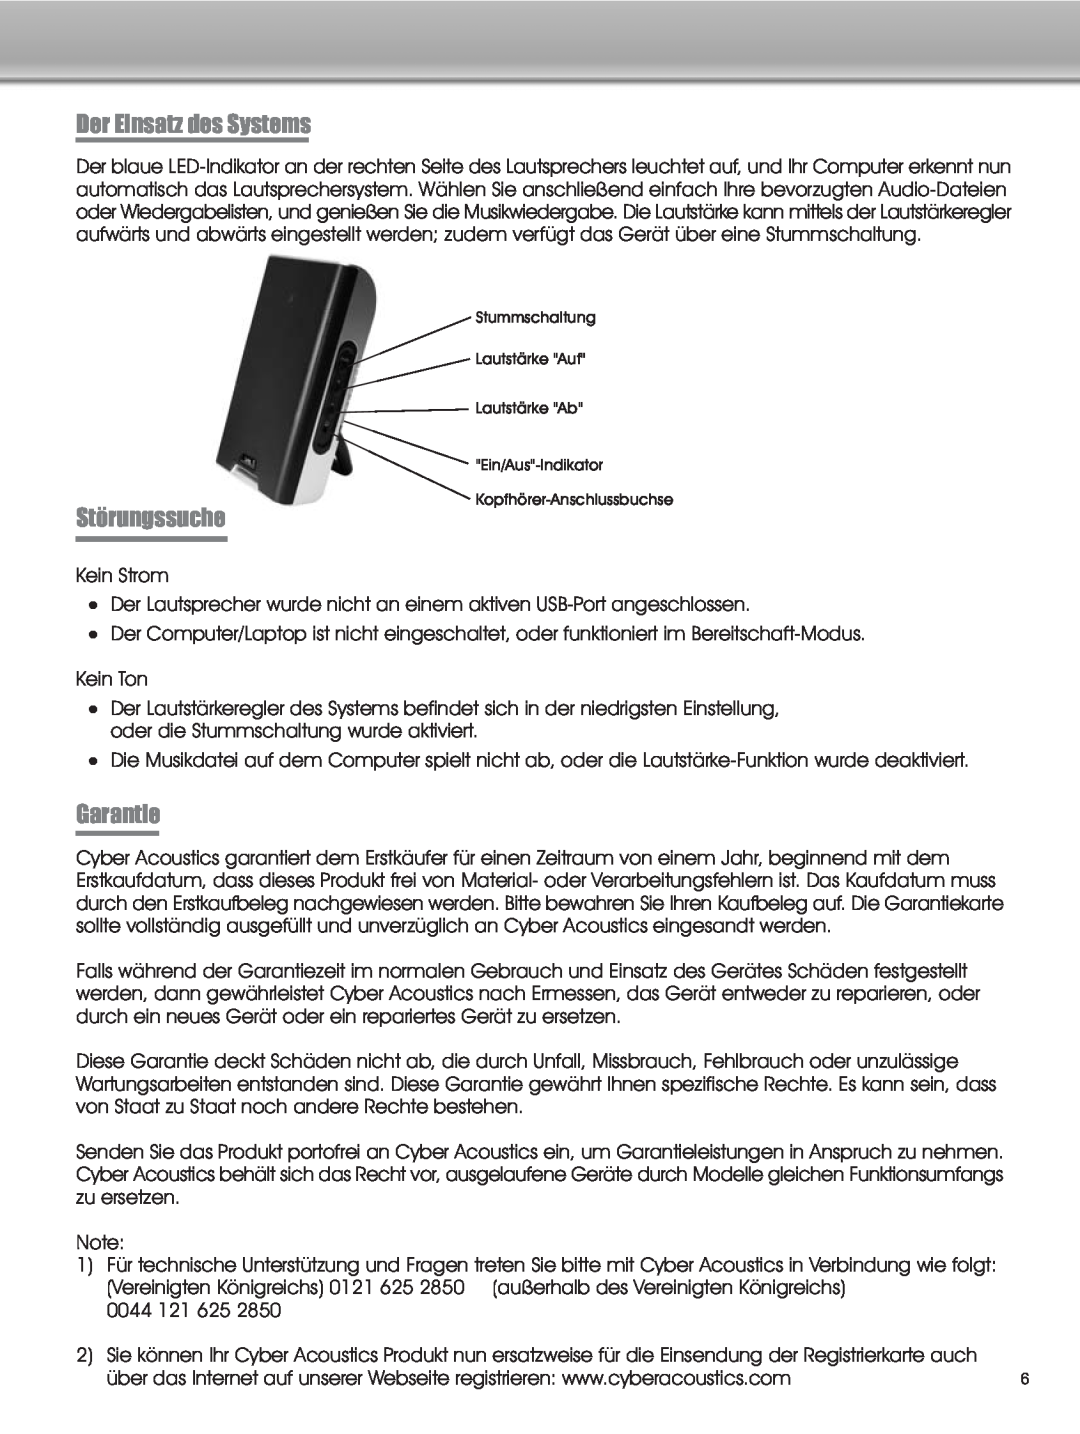 Cyber Acoustics CA-2908 manual Der Einsatz des Systems, Störungssuche, Garantie 